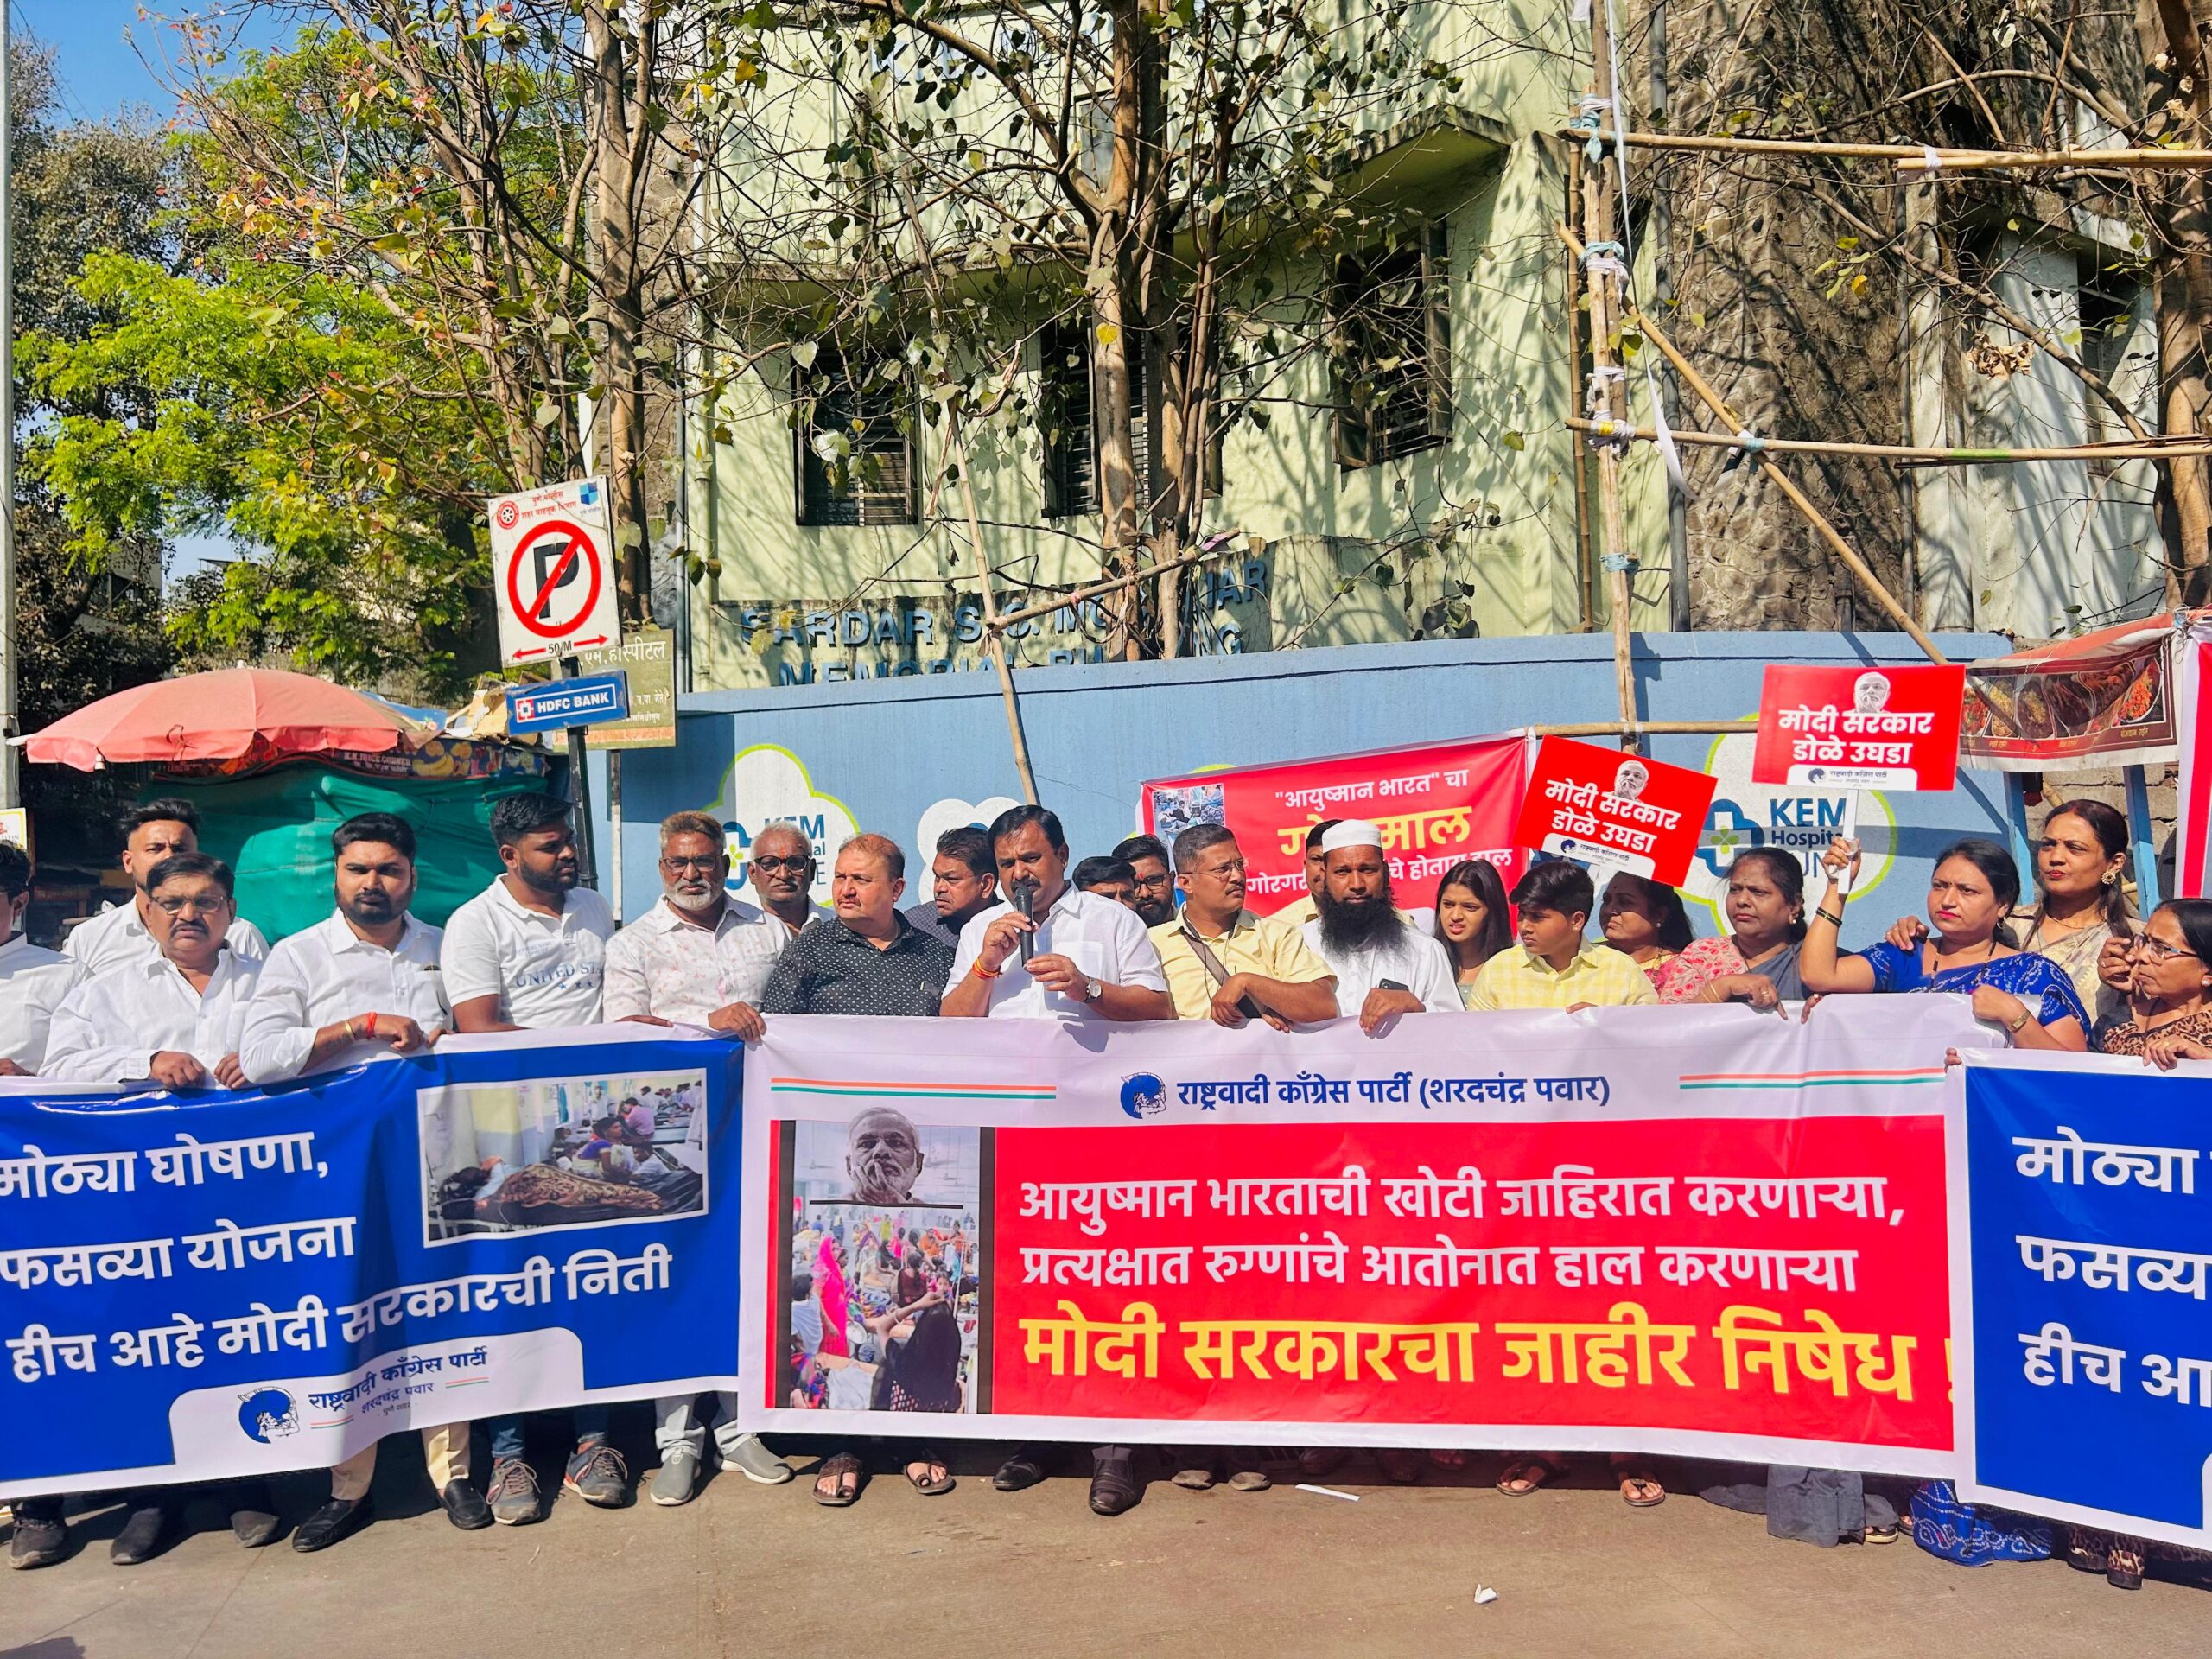 Ayushman Bharat | NCP – Sharadchandra Pawar – आयुष्मान भारत योजना रुग्णांच्या नव्हे तर विमा कंपन्यांच्या भल्यासाठी! | राष्ट्रवादी काँग्रेस (शरदचंद्र पवार) पार्टीच्या वतीने आंदोलन